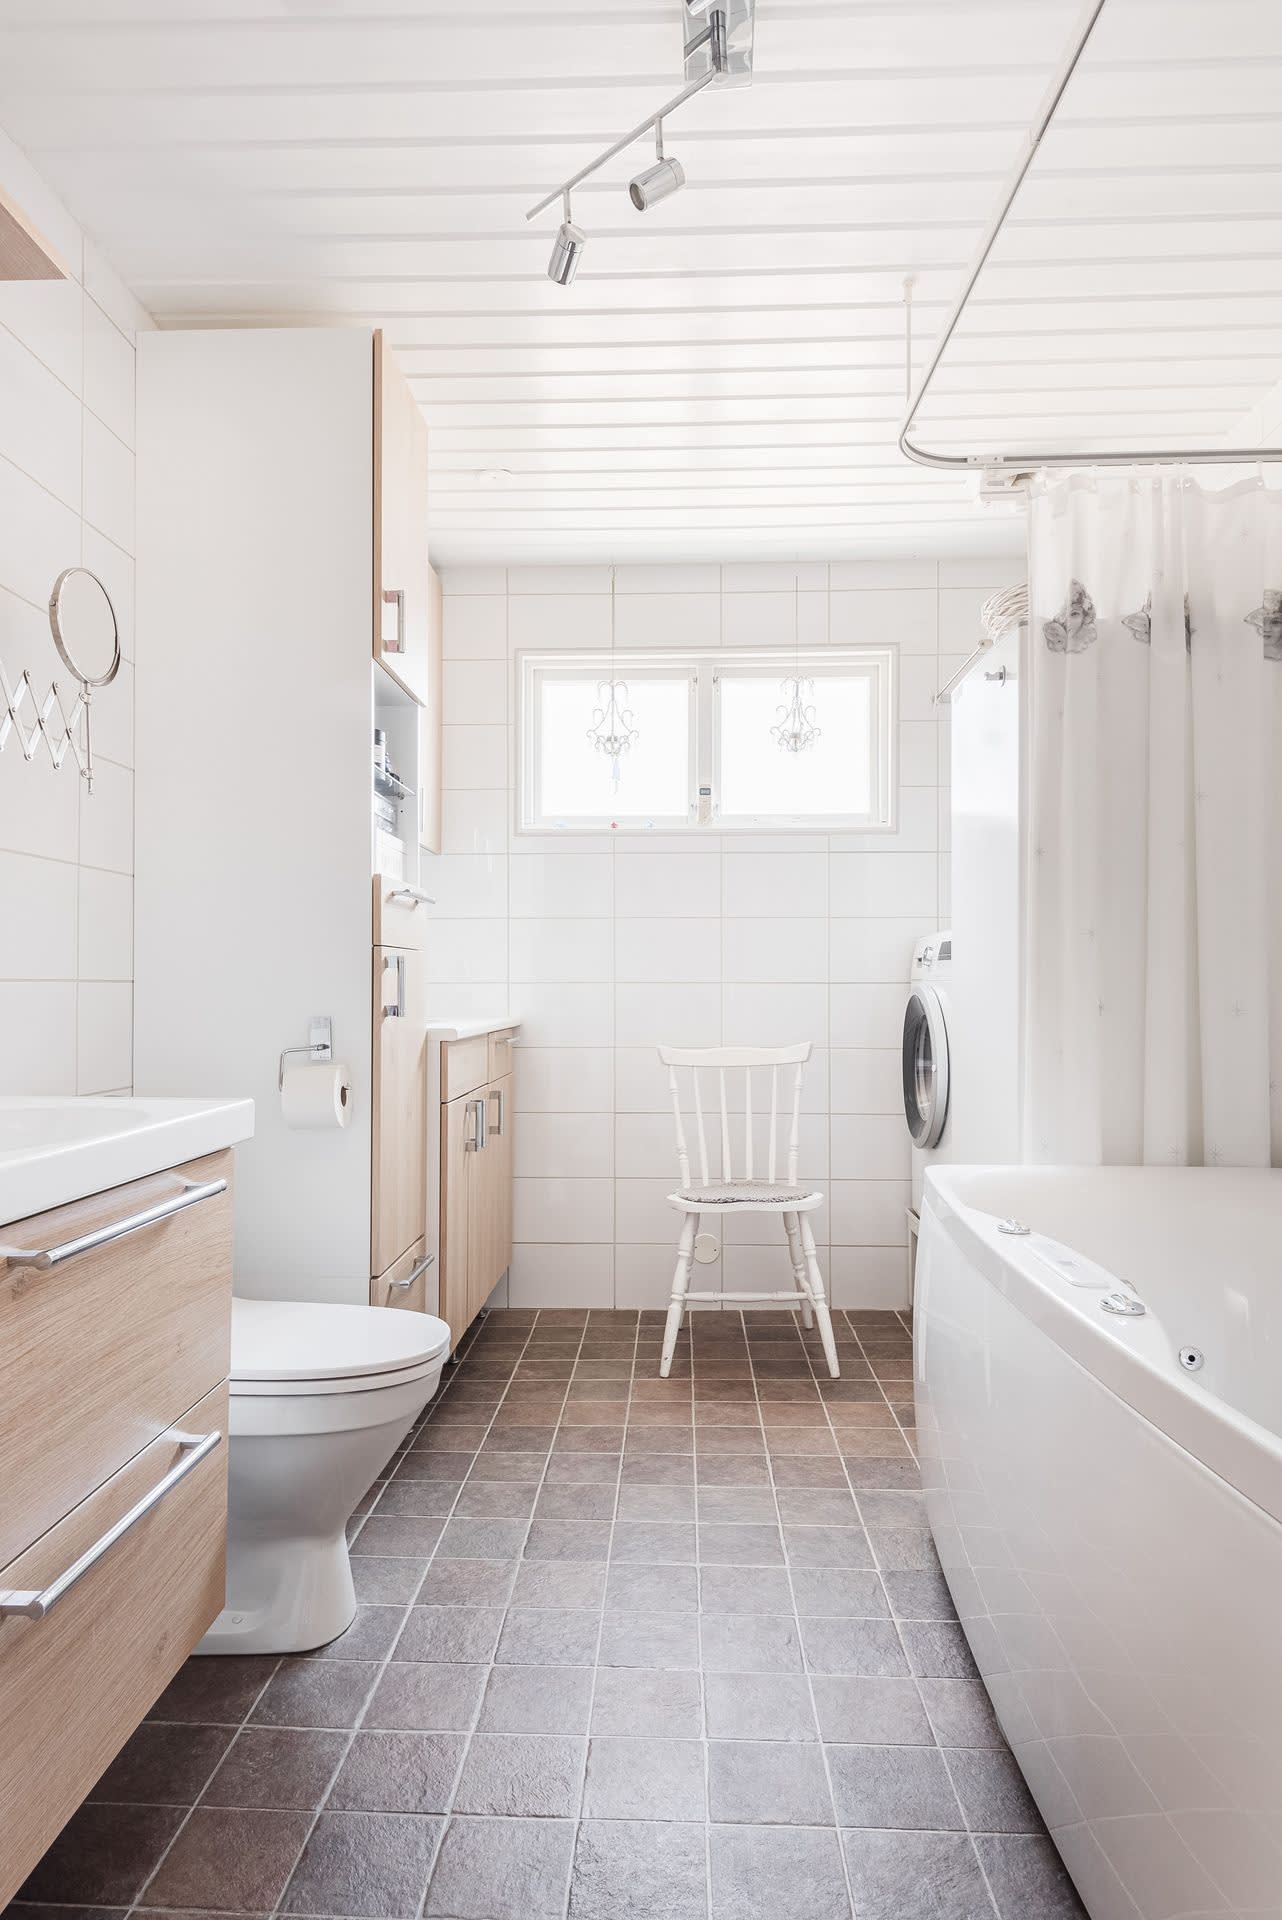 Helkaklat badrum/tvättstuga med bubbelbadkar, kommod och wc samt tvättmaskin, arbetsbänk med ho, varmvattenberedare, fönster och fläkt.